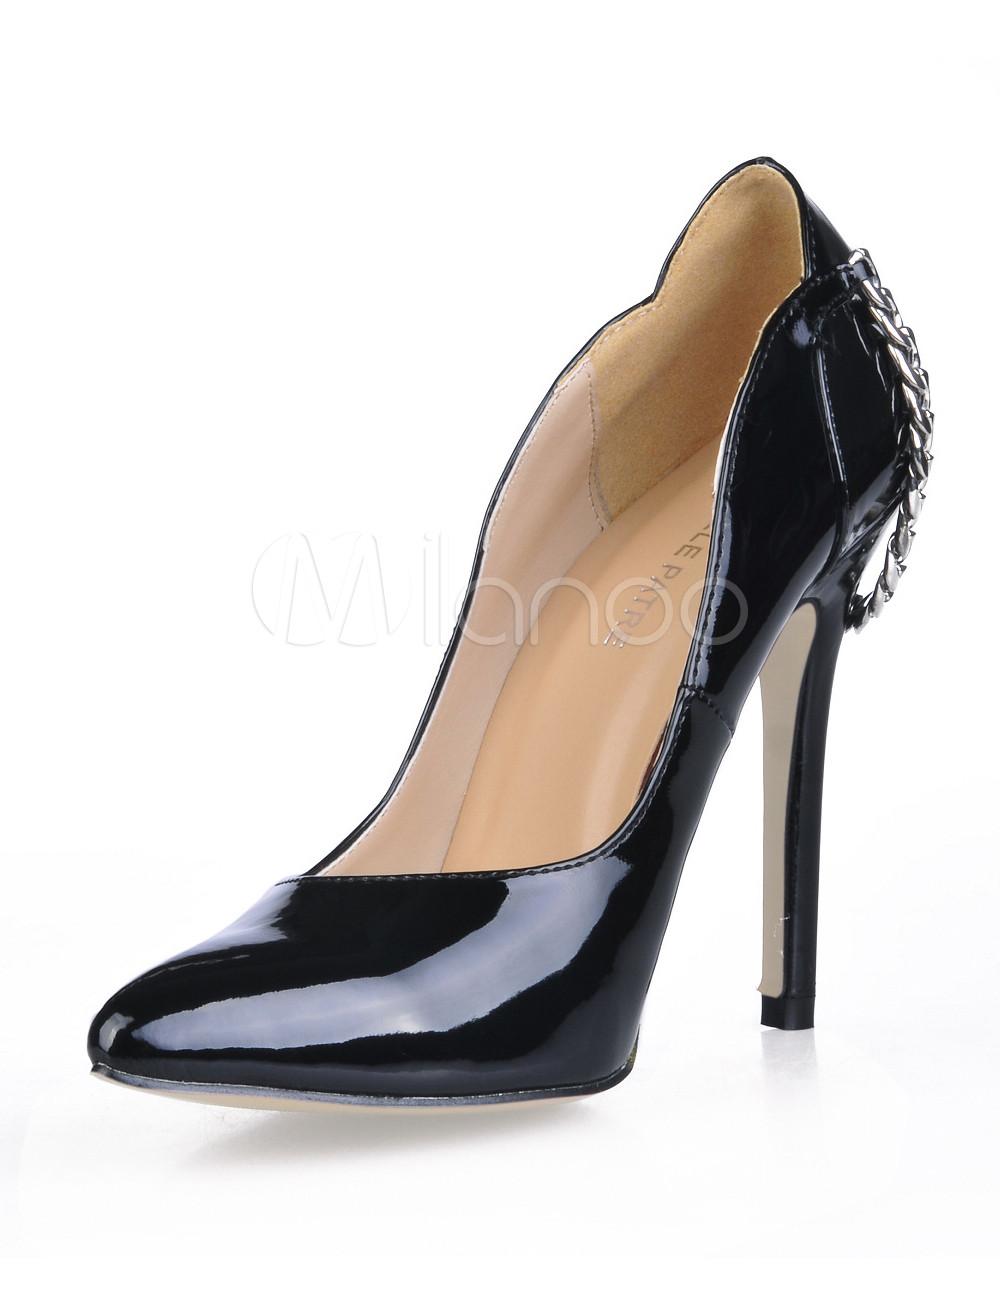 Foto Zapatos de punta triangular con pala de charol negros con cadena foto 798362